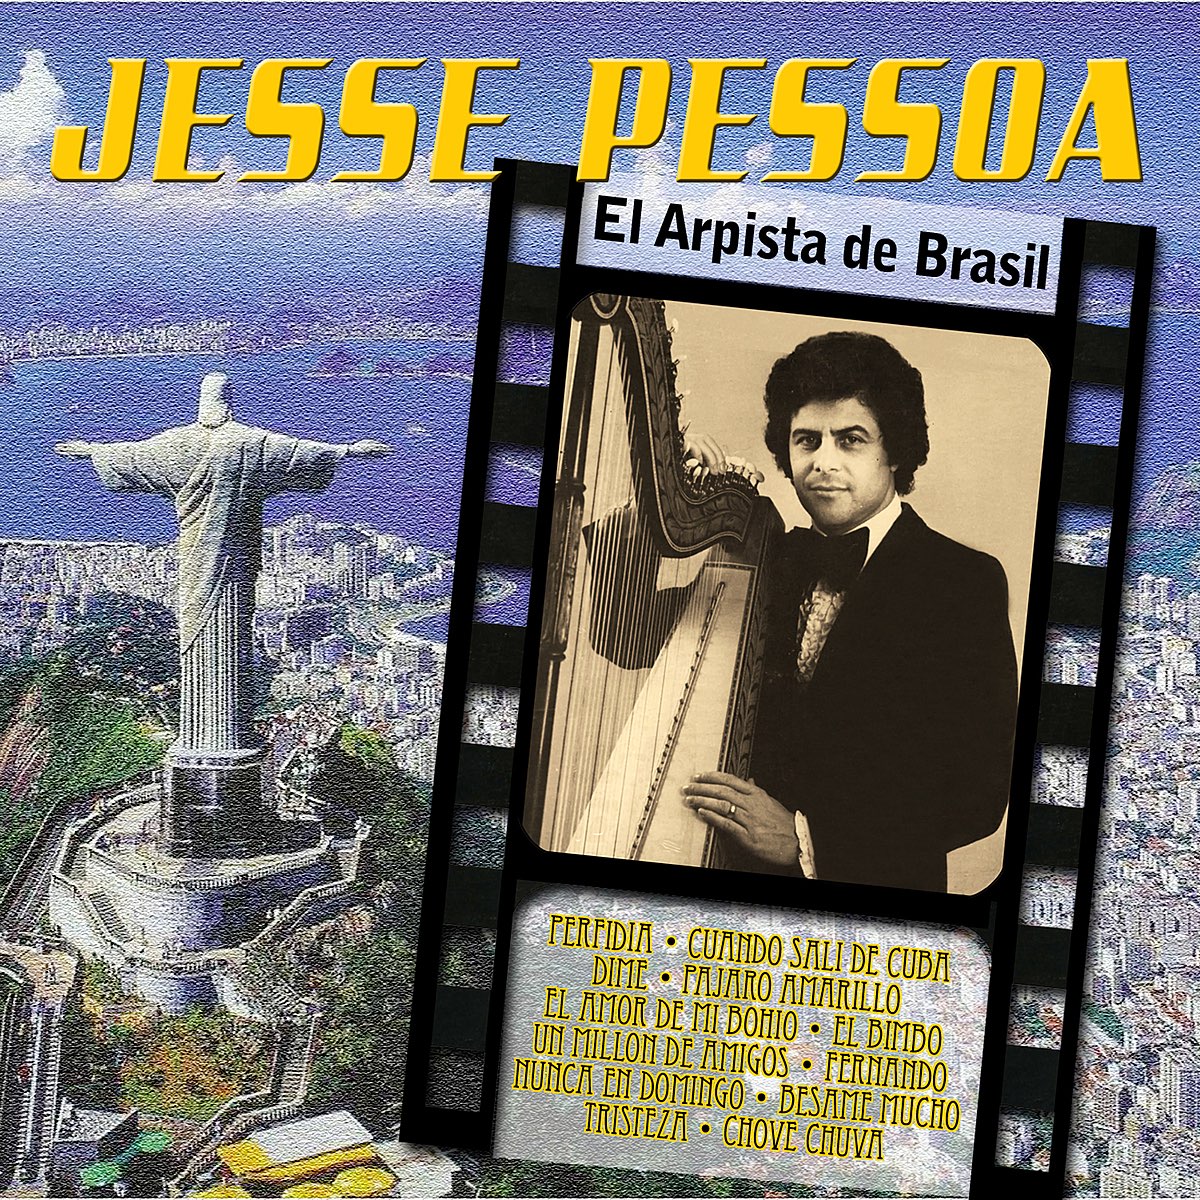 60 Dias Apaixonados – Song by Jesse Pessoa – Apple Music